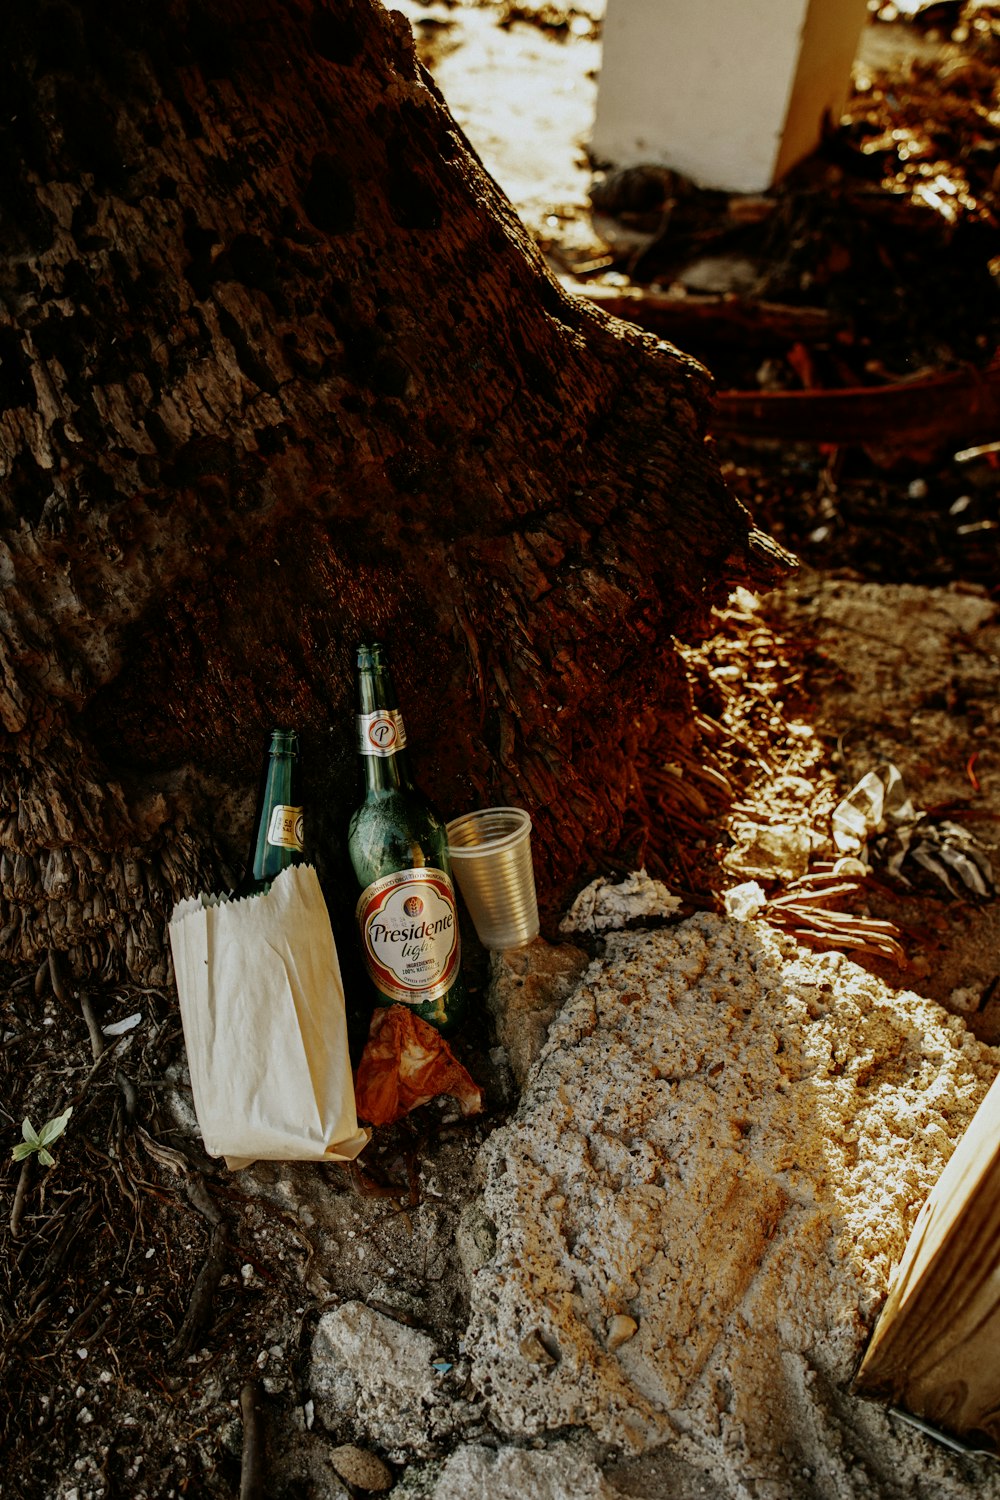 un paio di bottiglie di birra appoggiate su un mucchio di terra